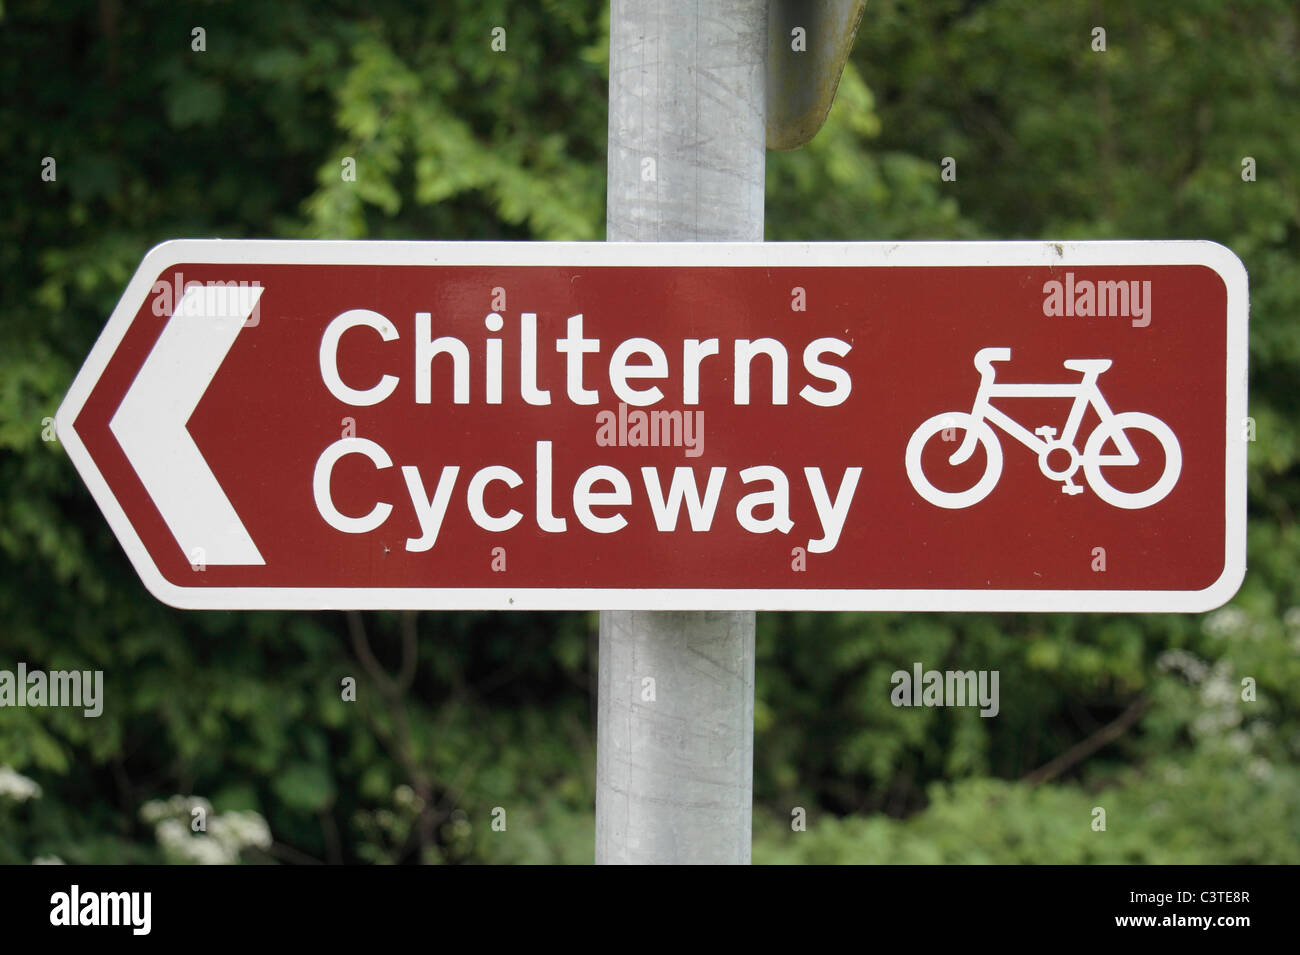 Poteau de signalisation indiquant le chemin le long de la piste cyclable Chilterns, St Leonards, près de Wendover, Chilterns, UK. Mai 2011 Banque D'Images